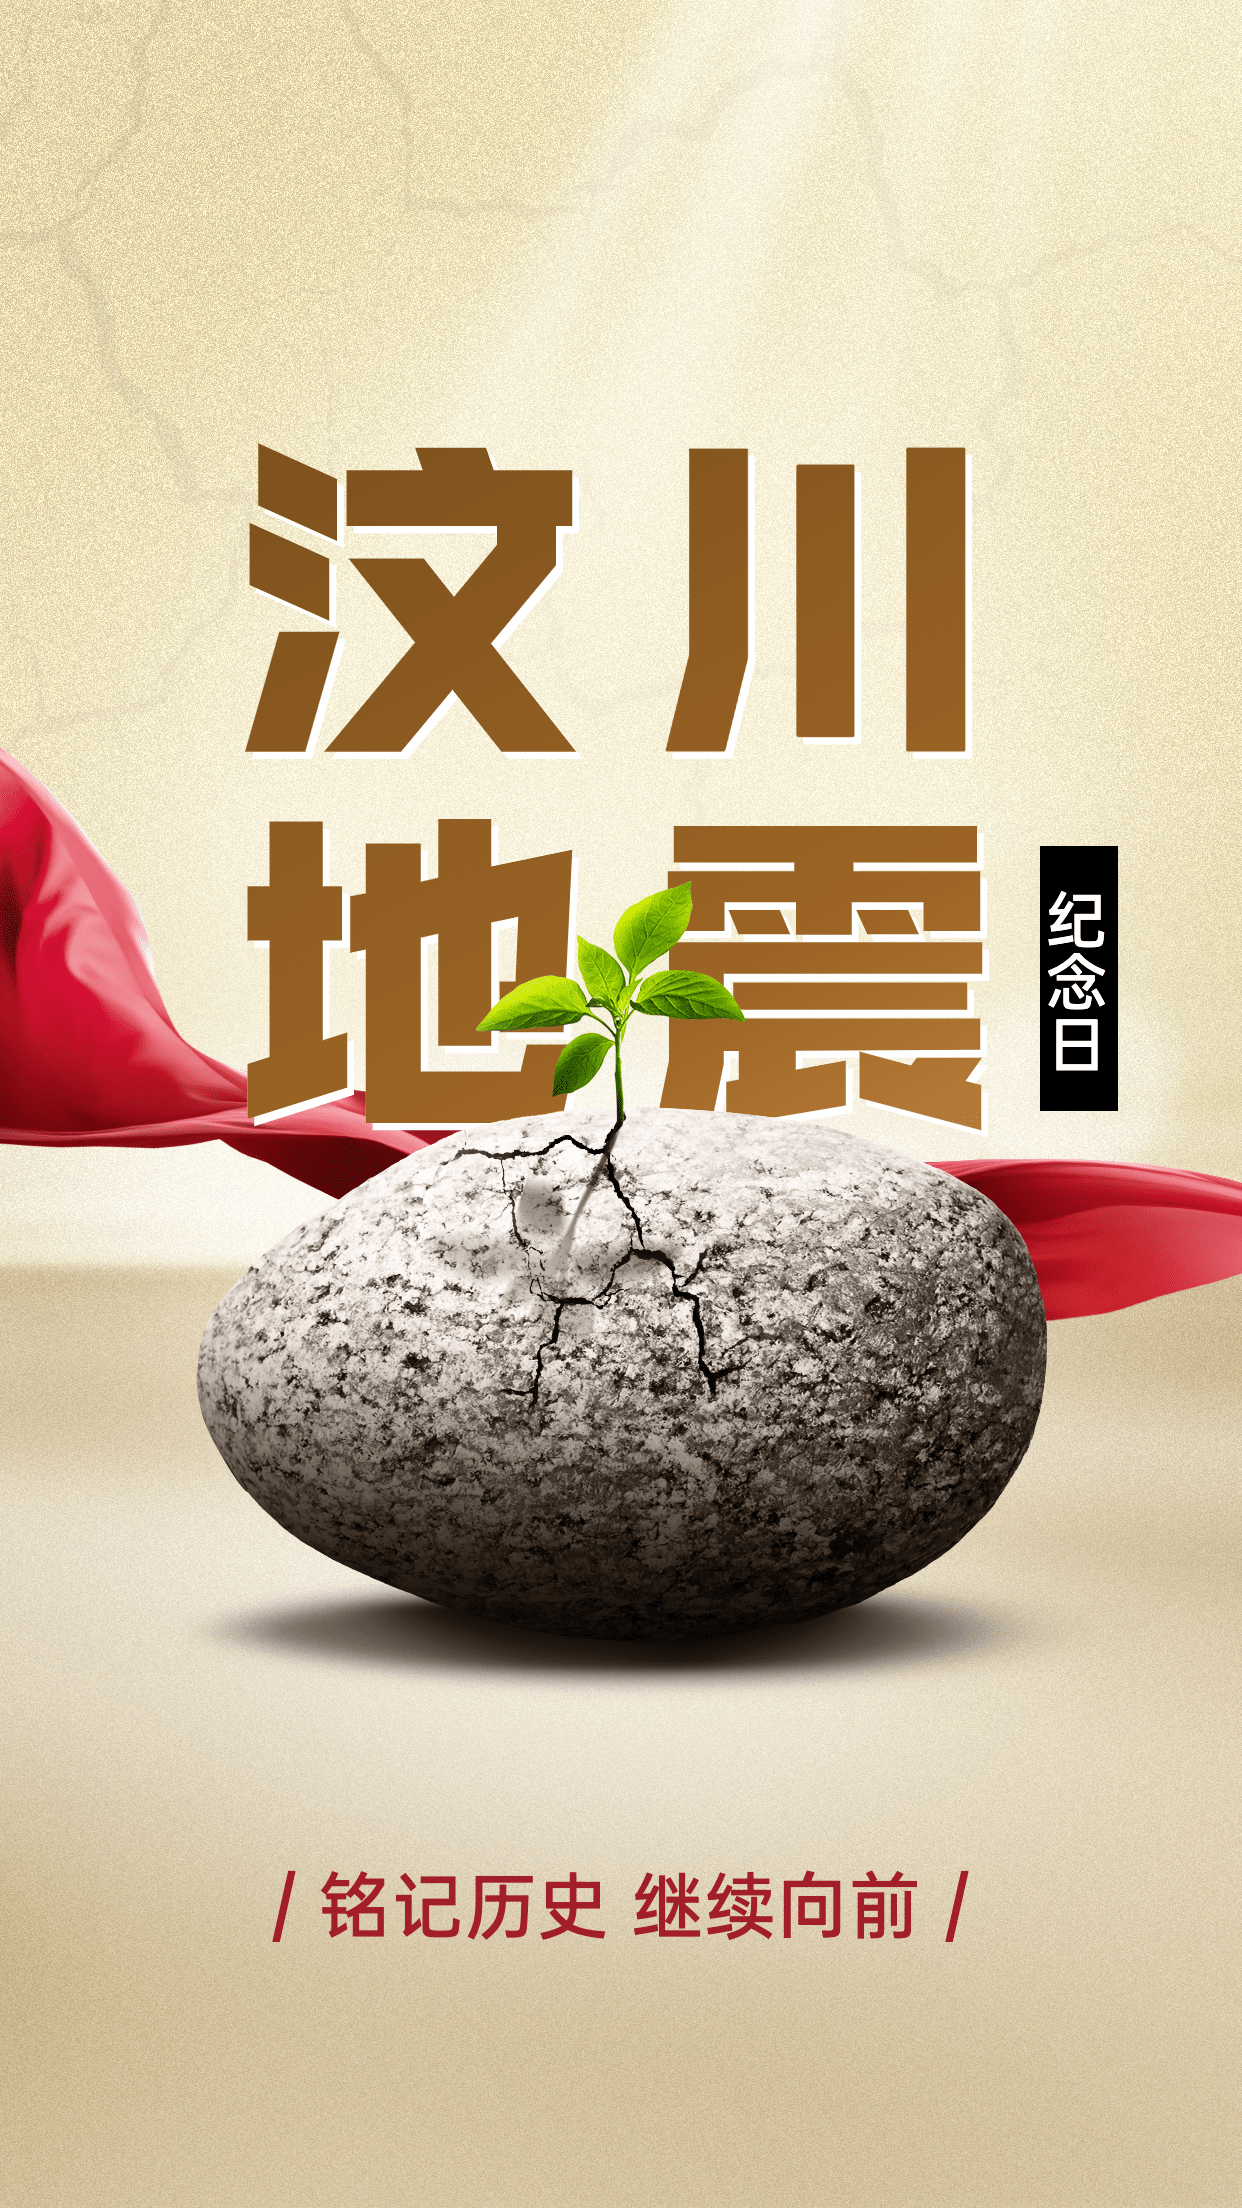 汶川地震纪念日节日宣传创意合成手机海报